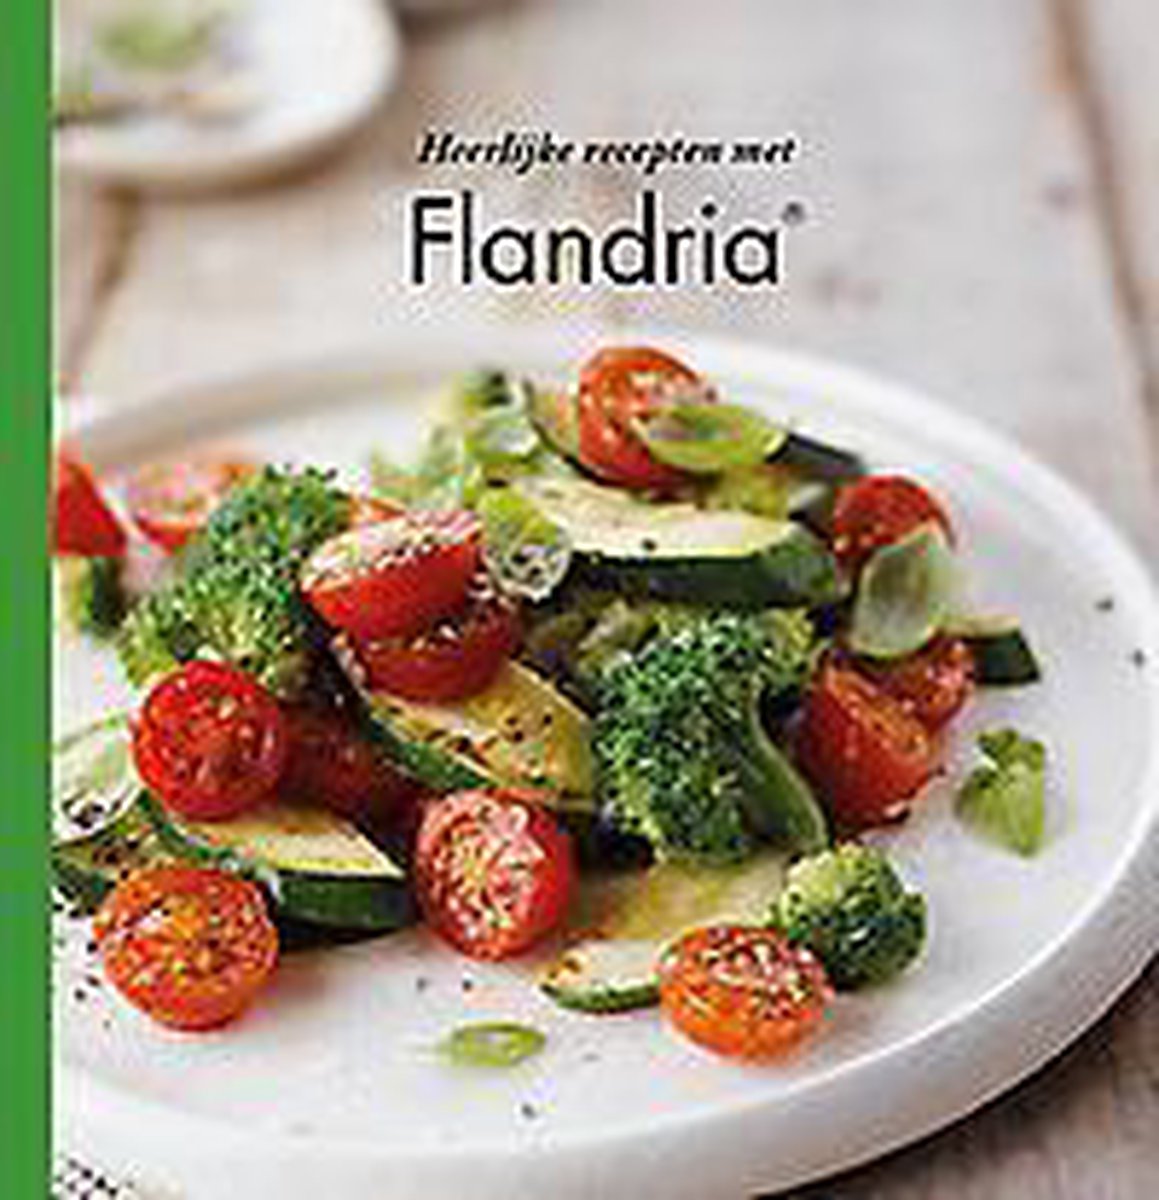 Heerlijke recepten met Flandria